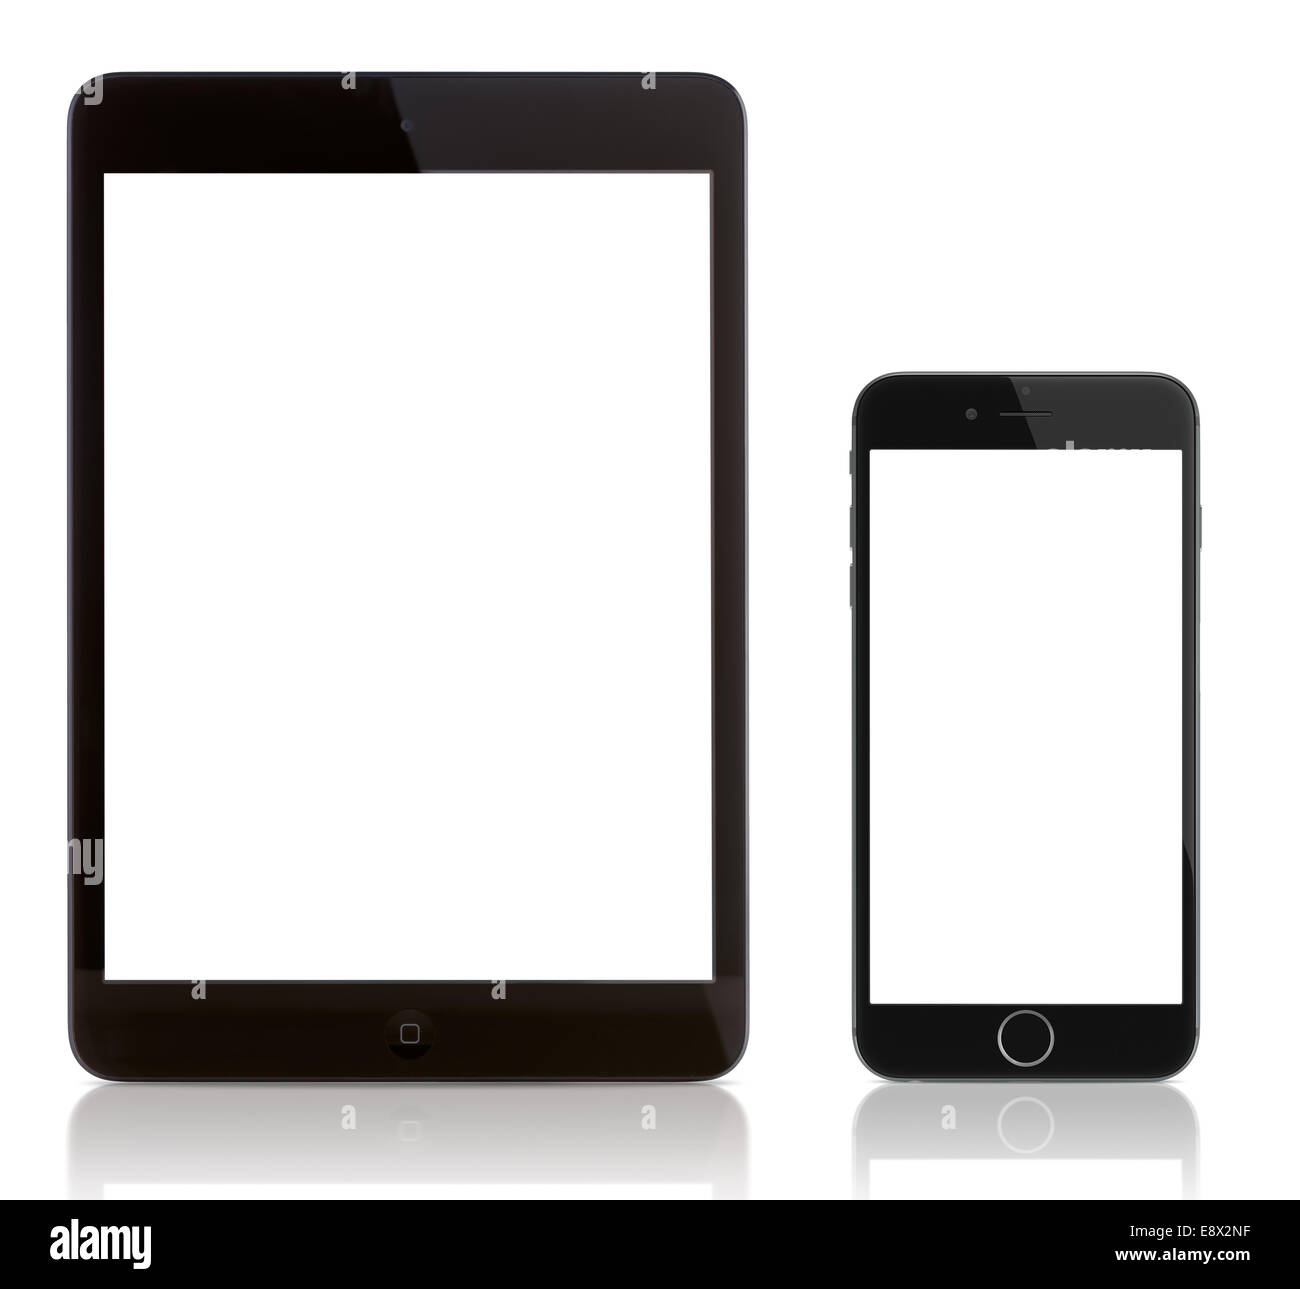 iPad Mini und iPhone 6 auf weiß. Leerer Bildschirm auf dem iPhone 6 und iPad. Stockfoto